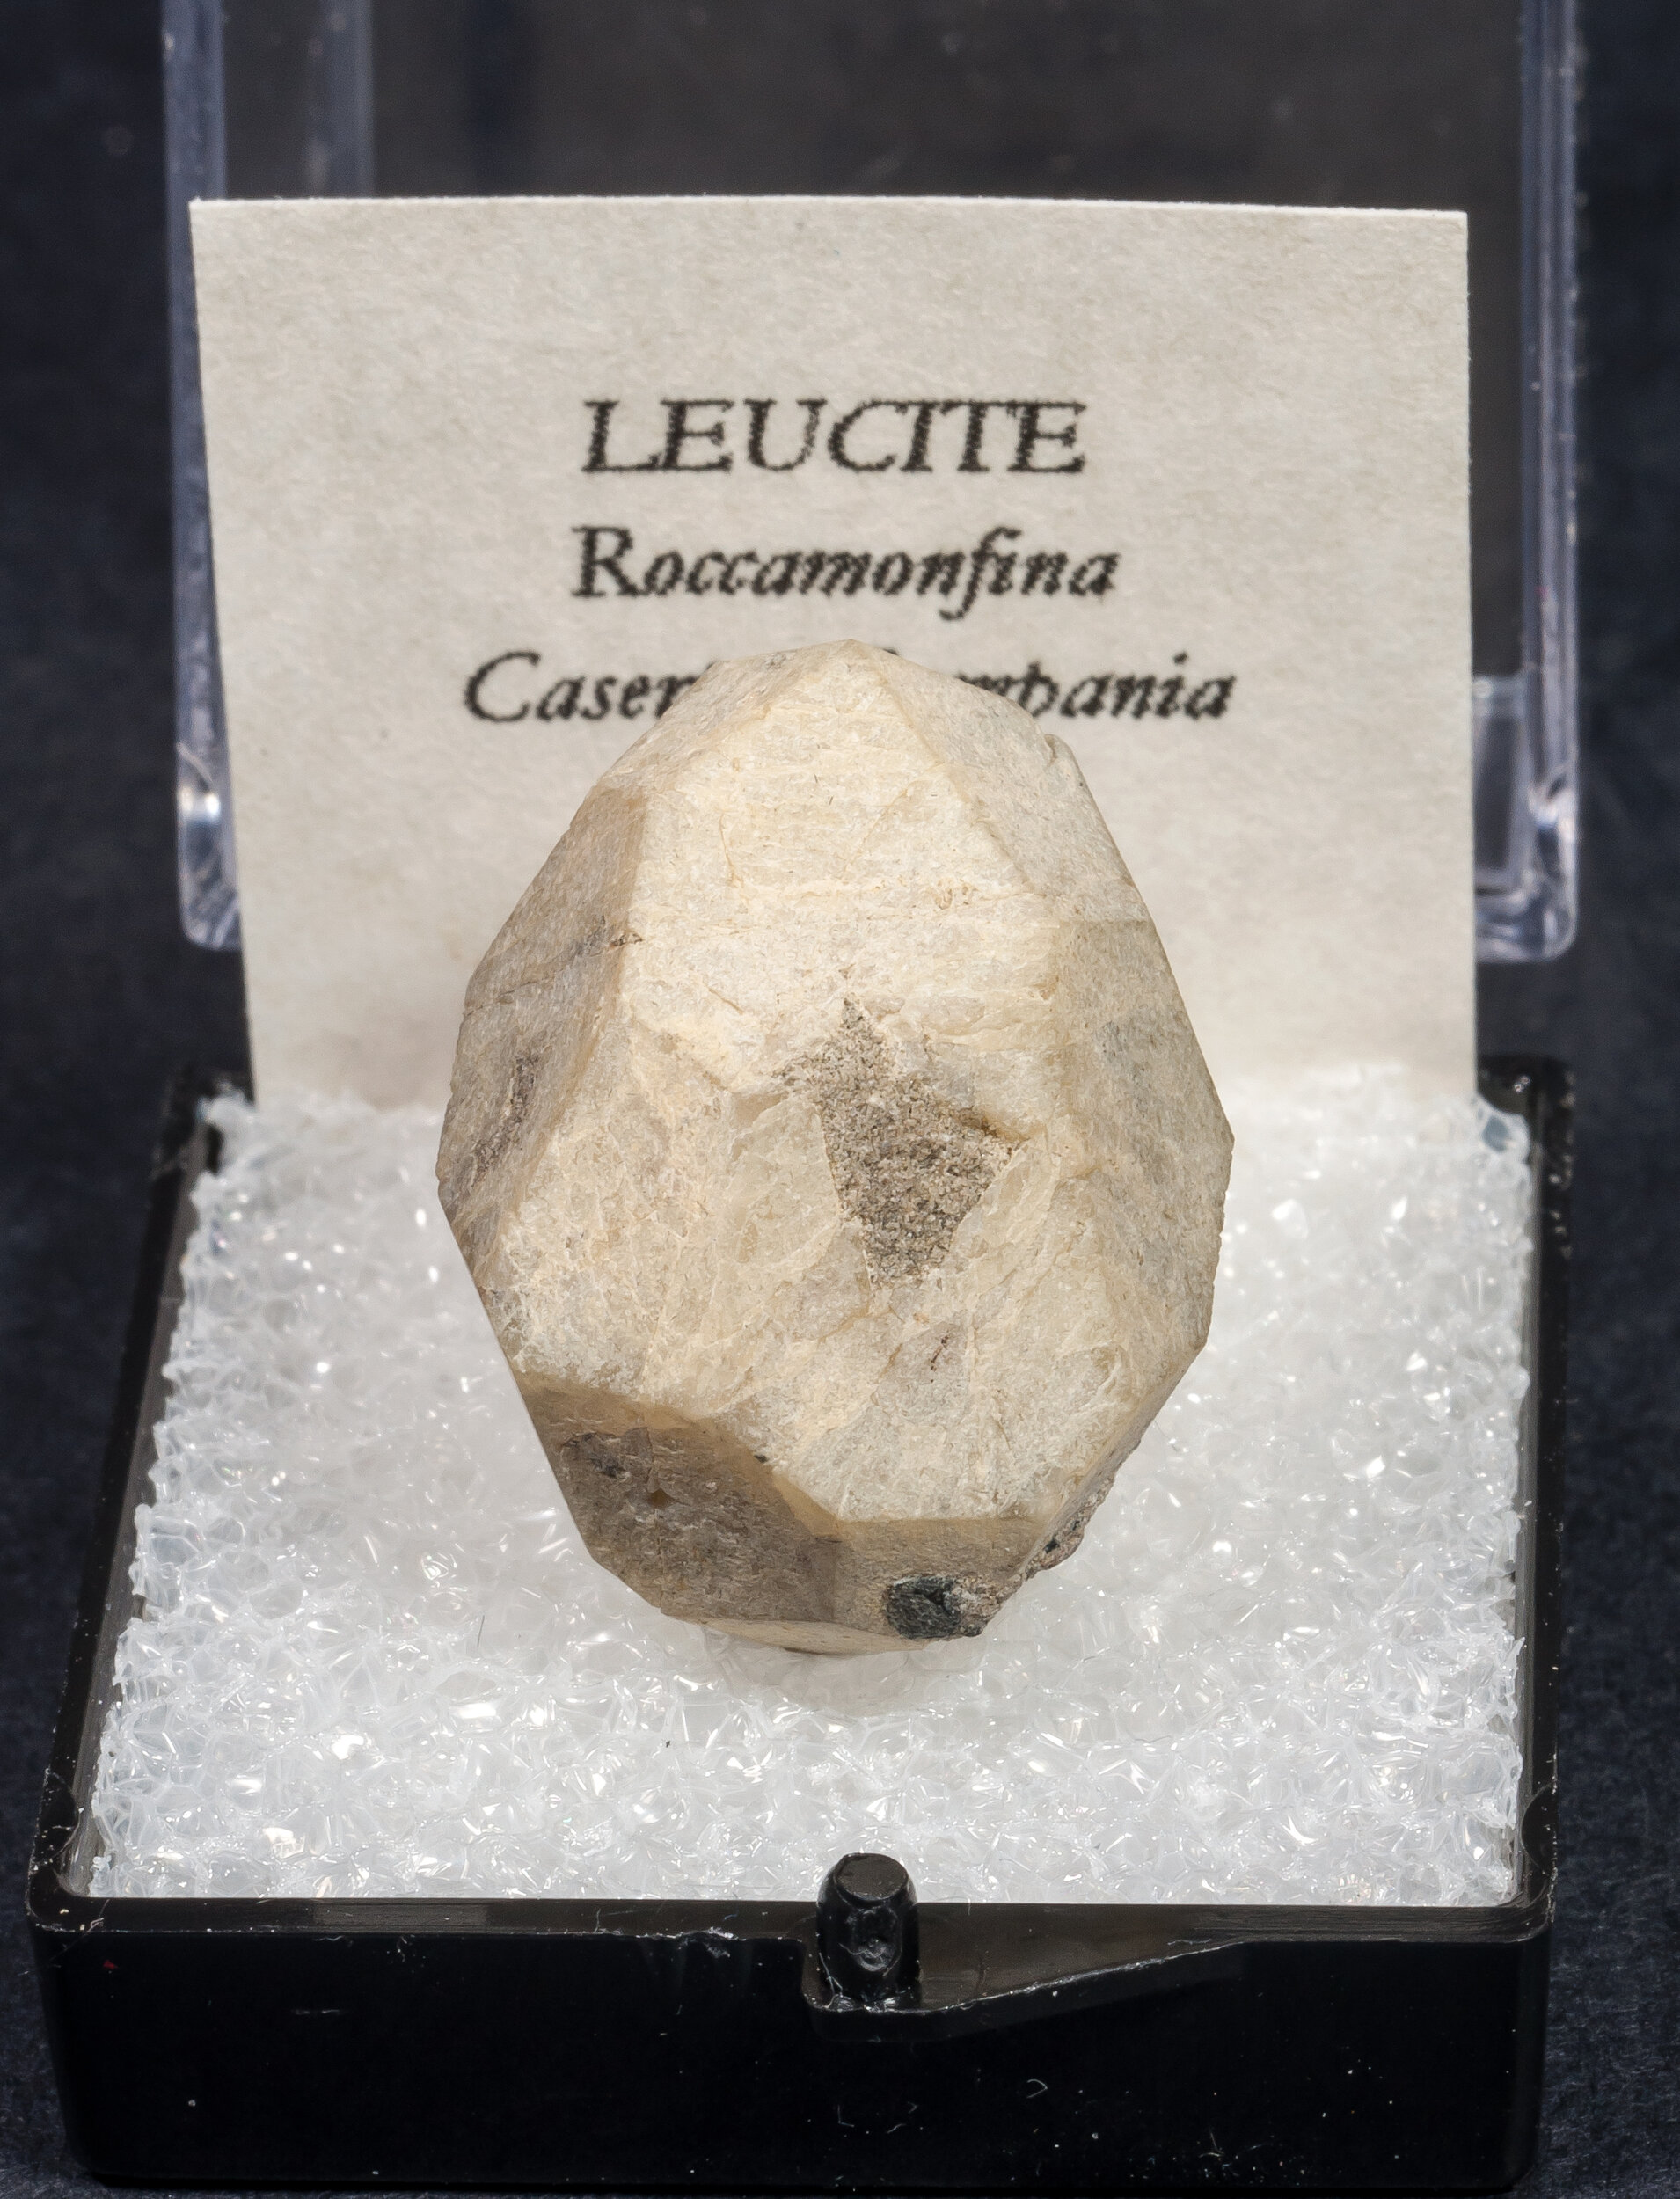 specimens/s_imagesAM7/Leucite-MZ13AM7f.jpg